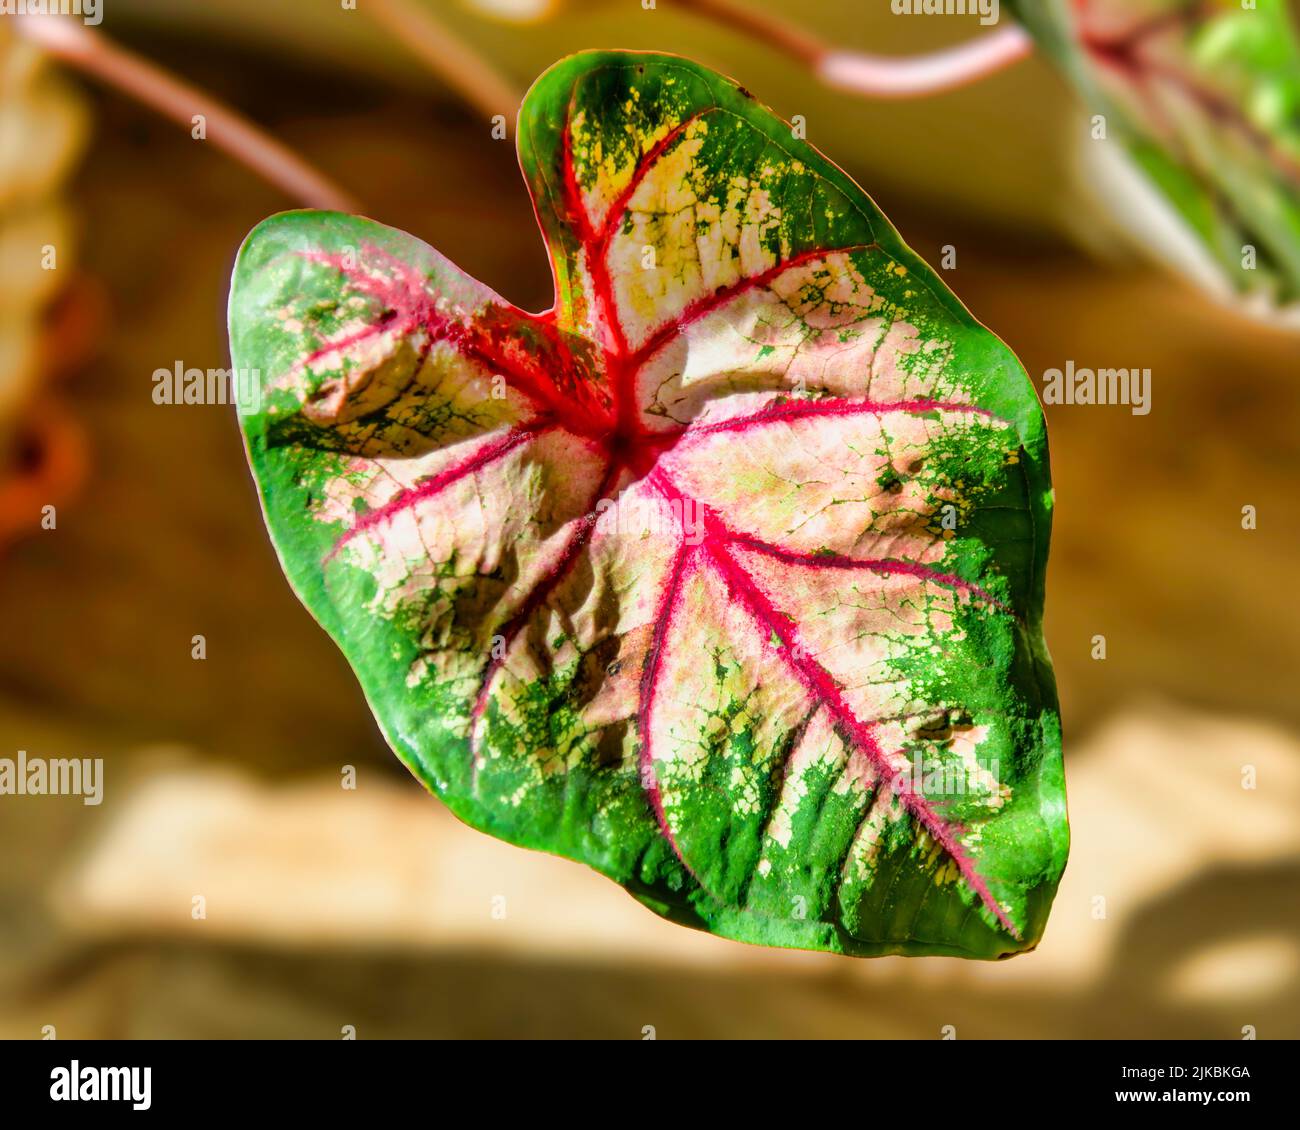 Caladium leaf Stock Photo